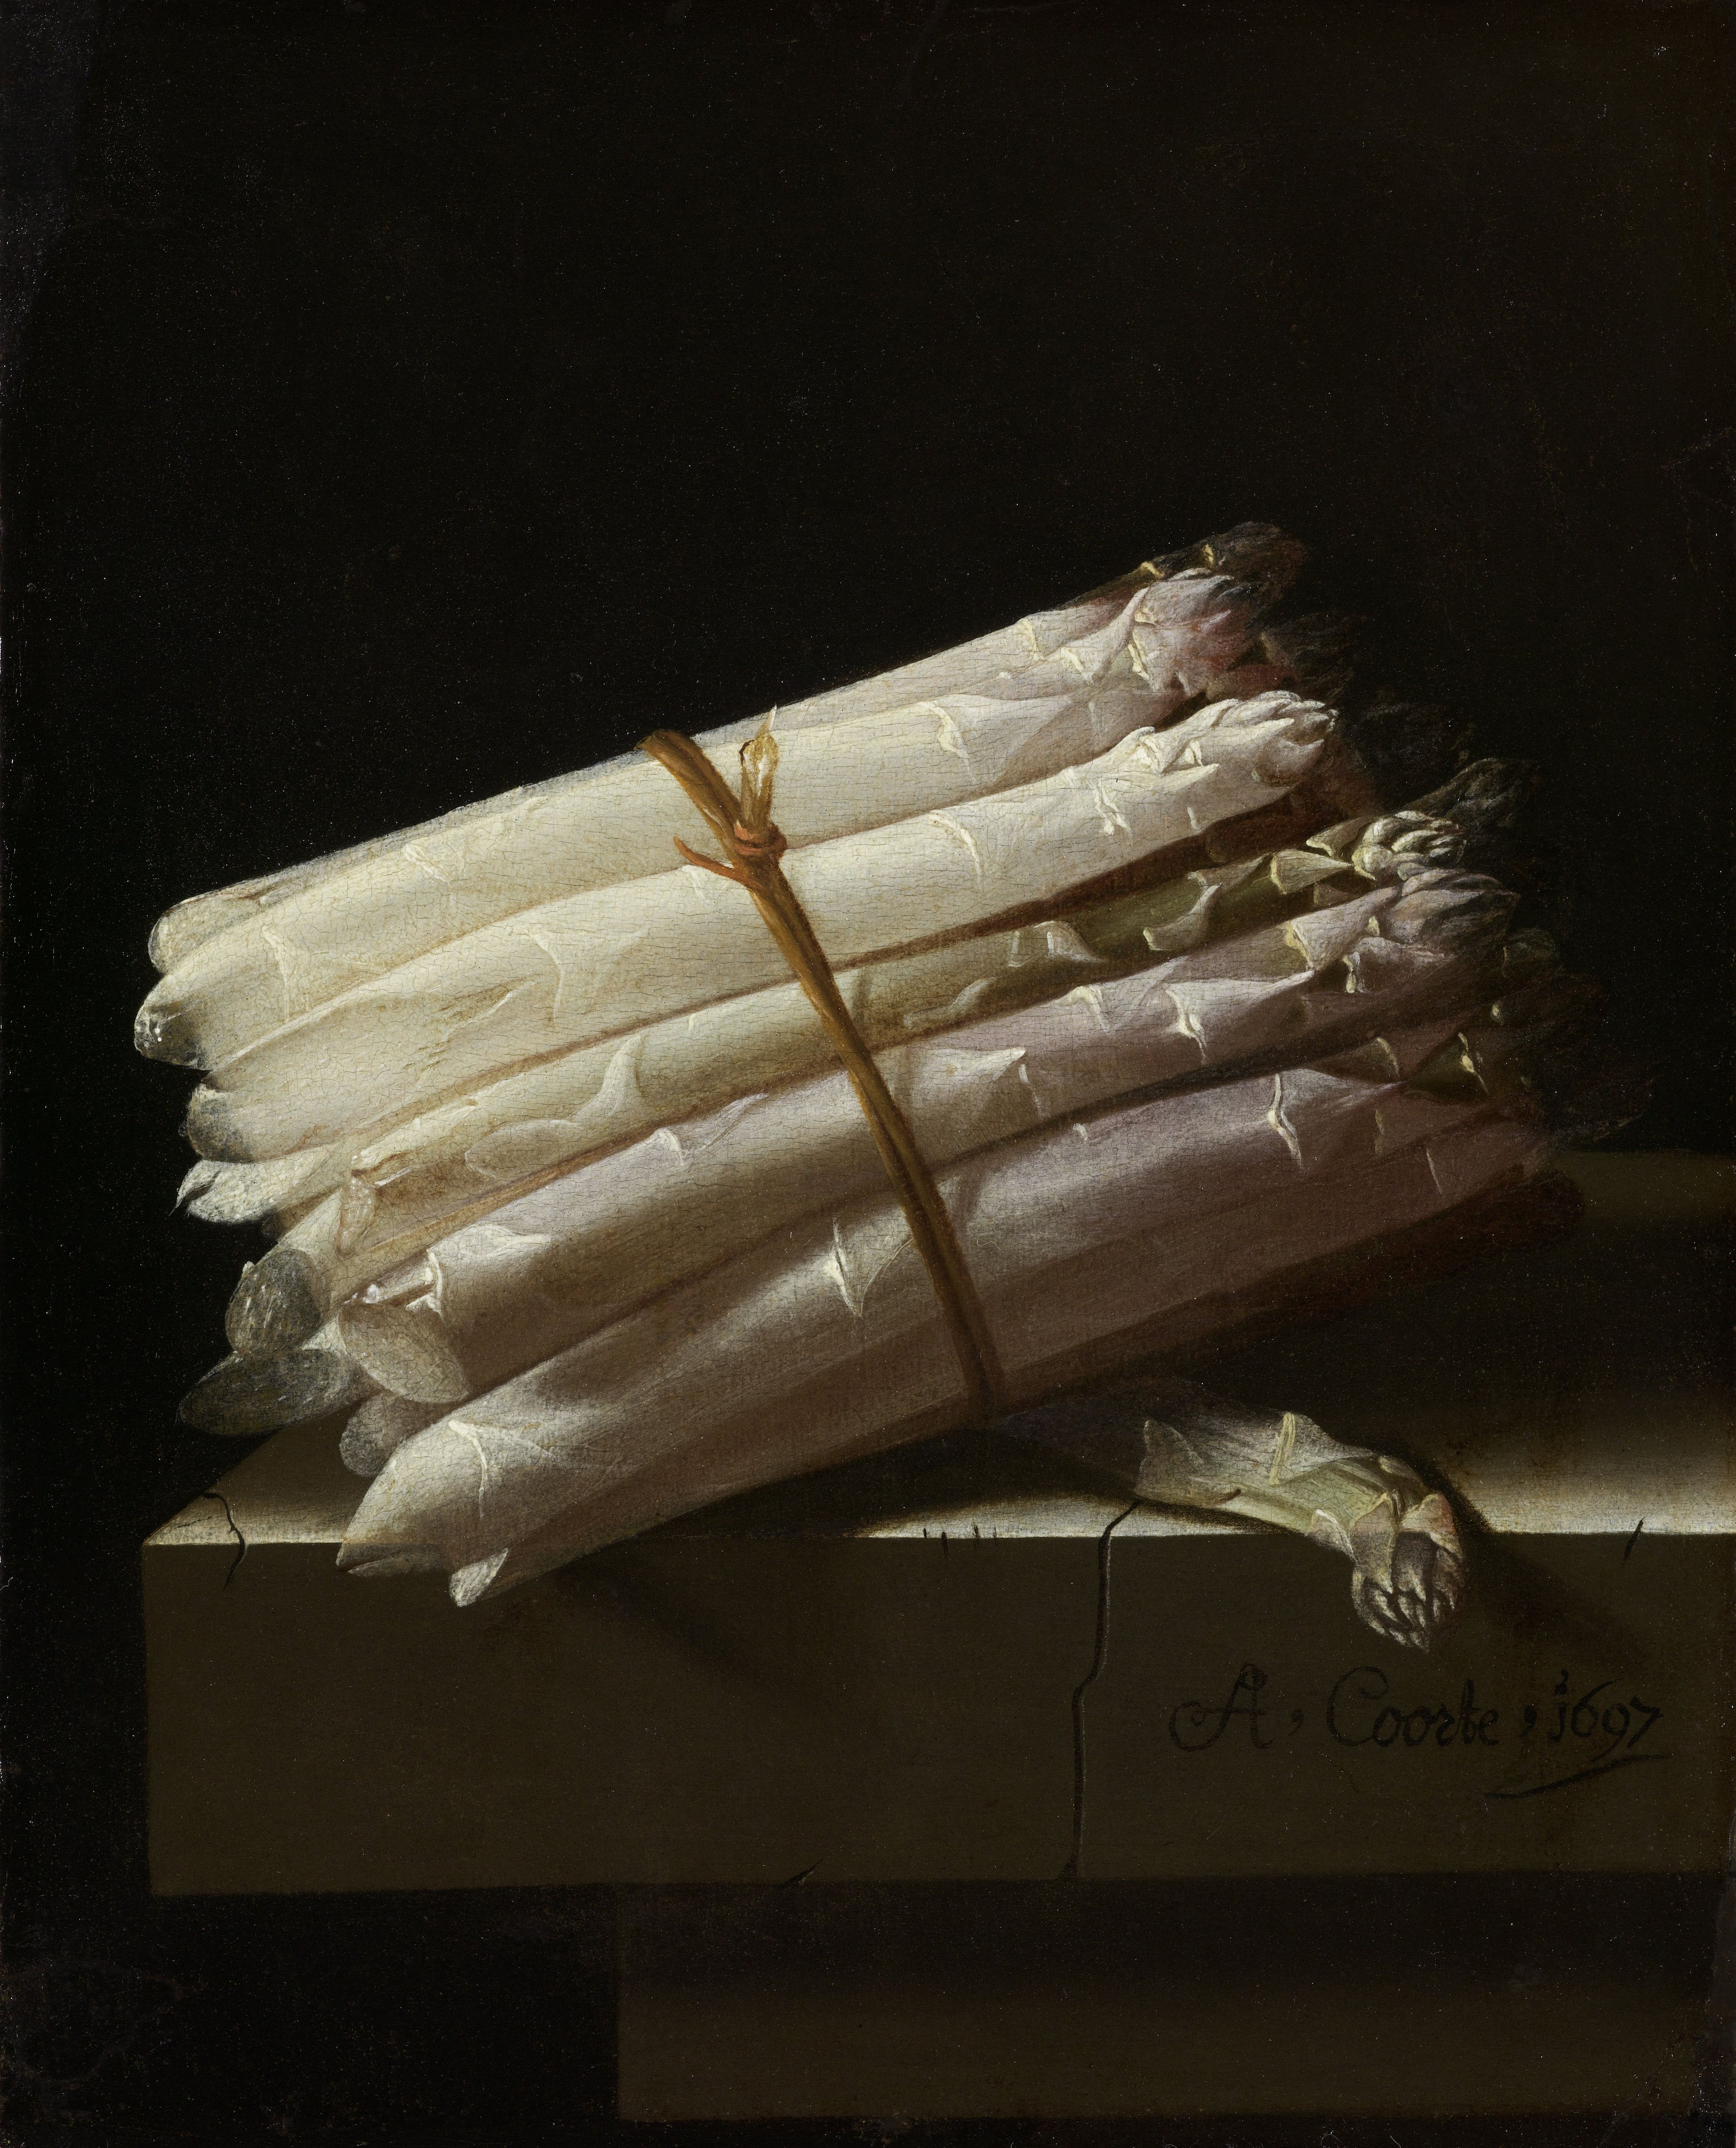 Stilleven met asperge by Adriaen Coorte - 1697 - 25 x 20,5 cm Rijksmuseum